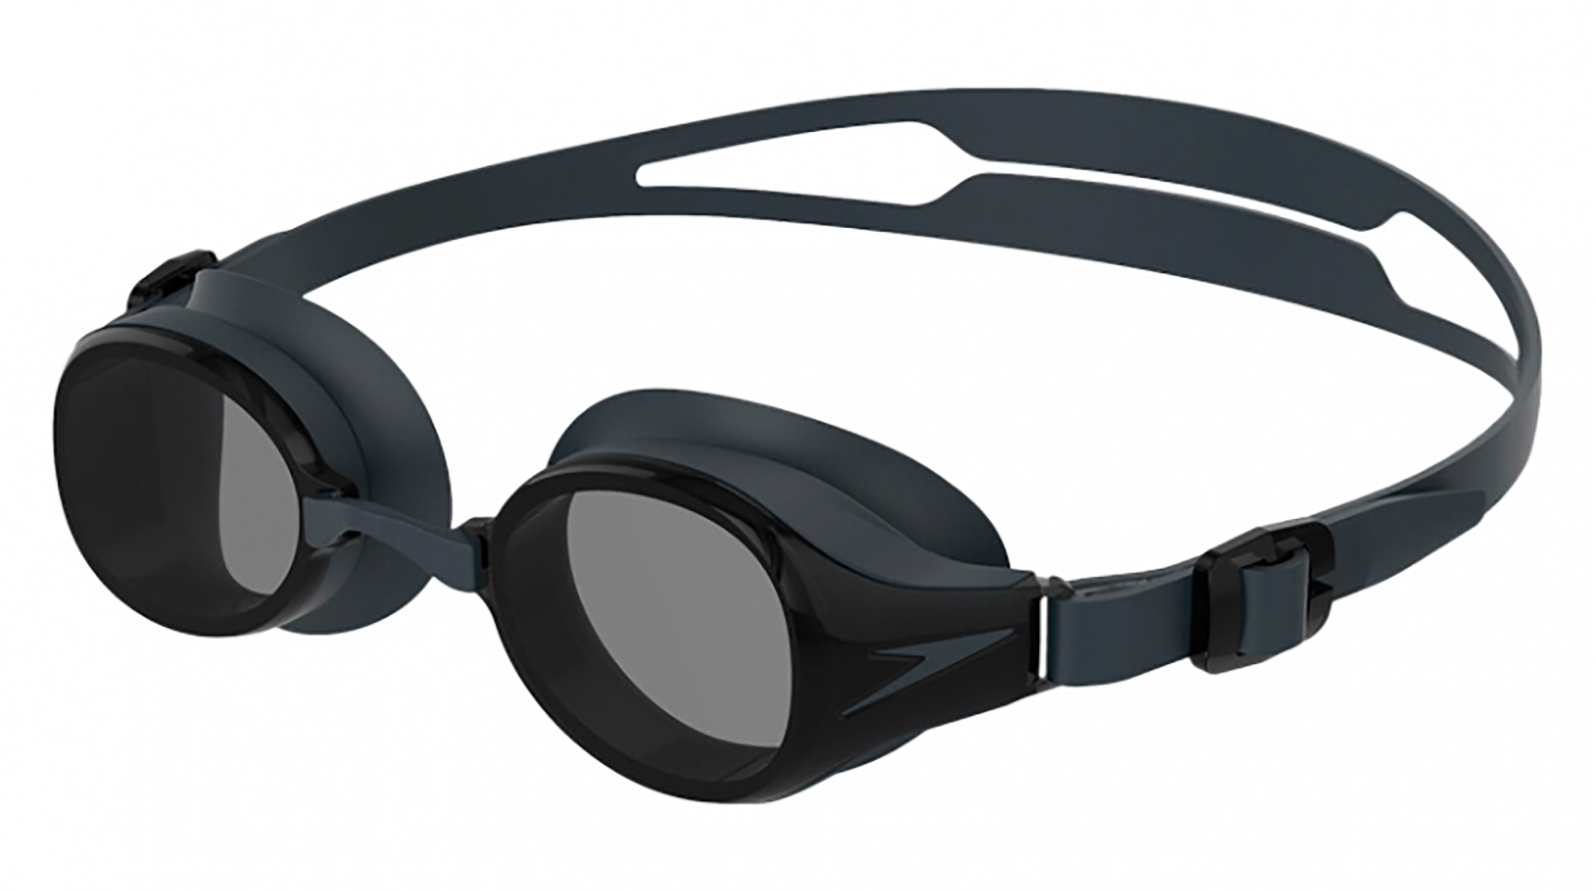 Speedo Очки для плавания Hydropure Optical F808 -3,0 grand voyage насадка на очки для водителя с желтыми линзами 01c1